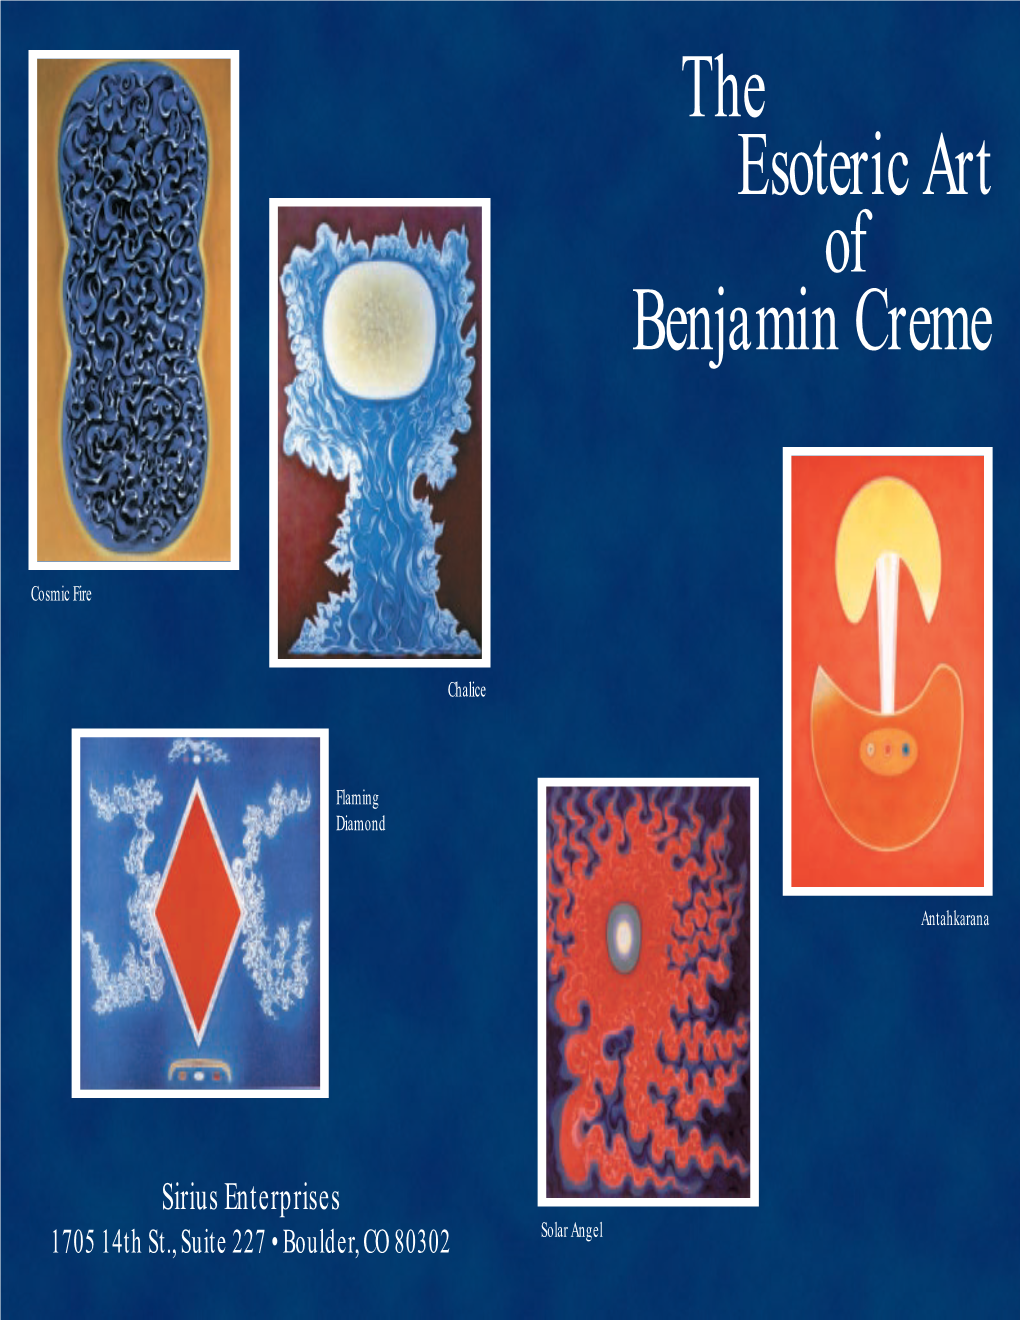 The Esoteric Art of Benjamin Creme